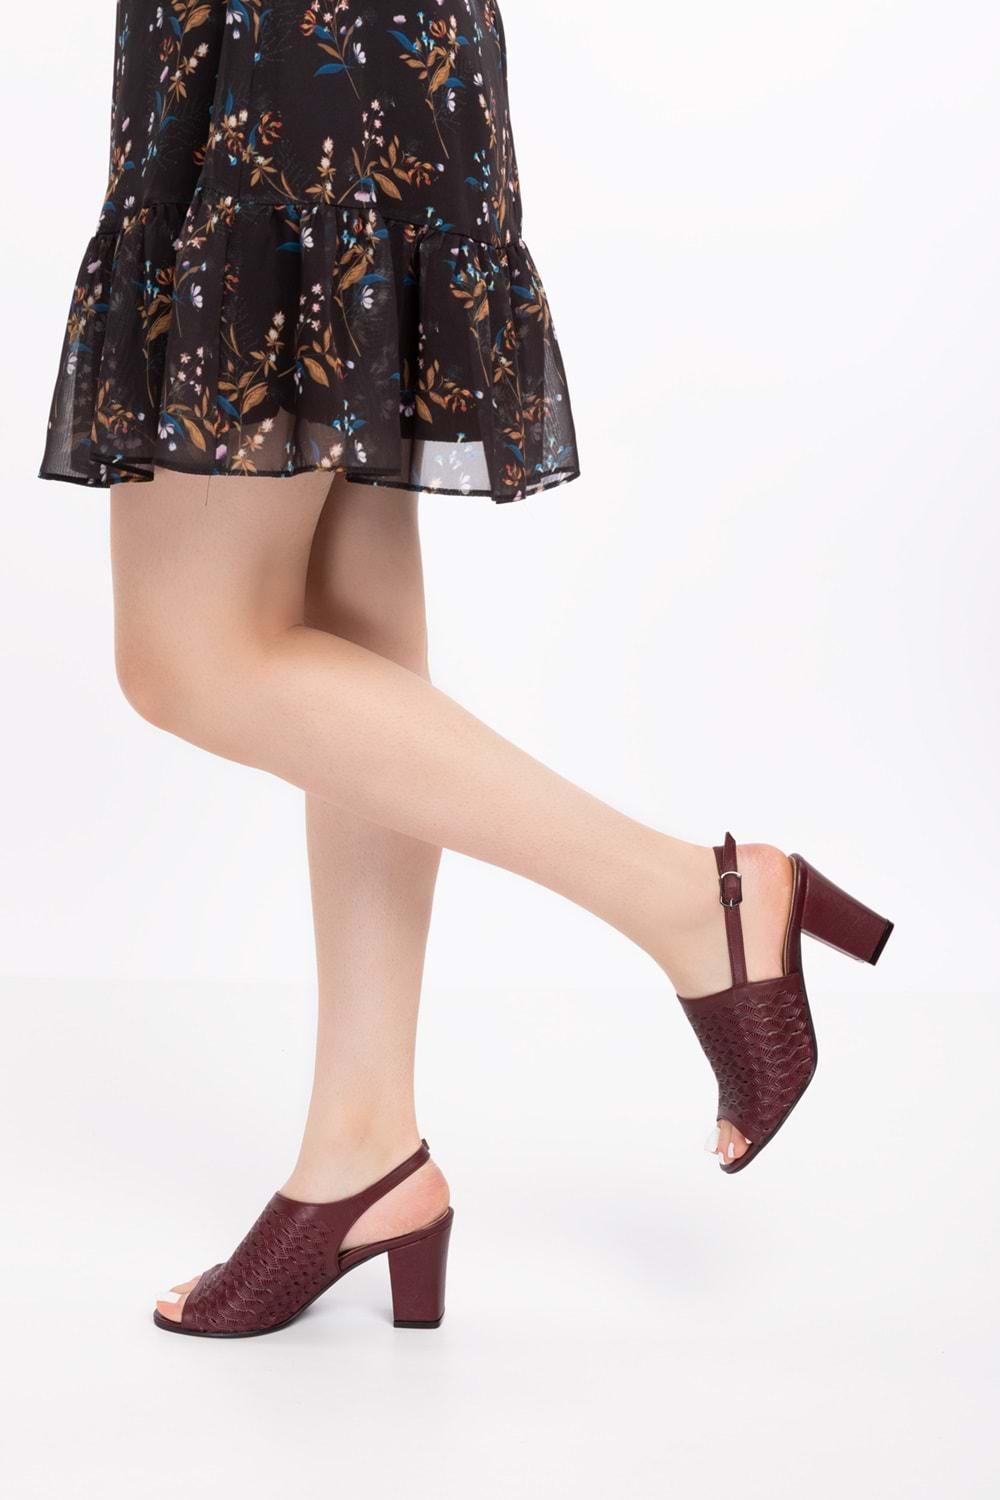 Gondol Kadın Hakiki Deri Lazer Kesim Klasik Topuklu Ayakkabı şhn.835 - Bordo - 35